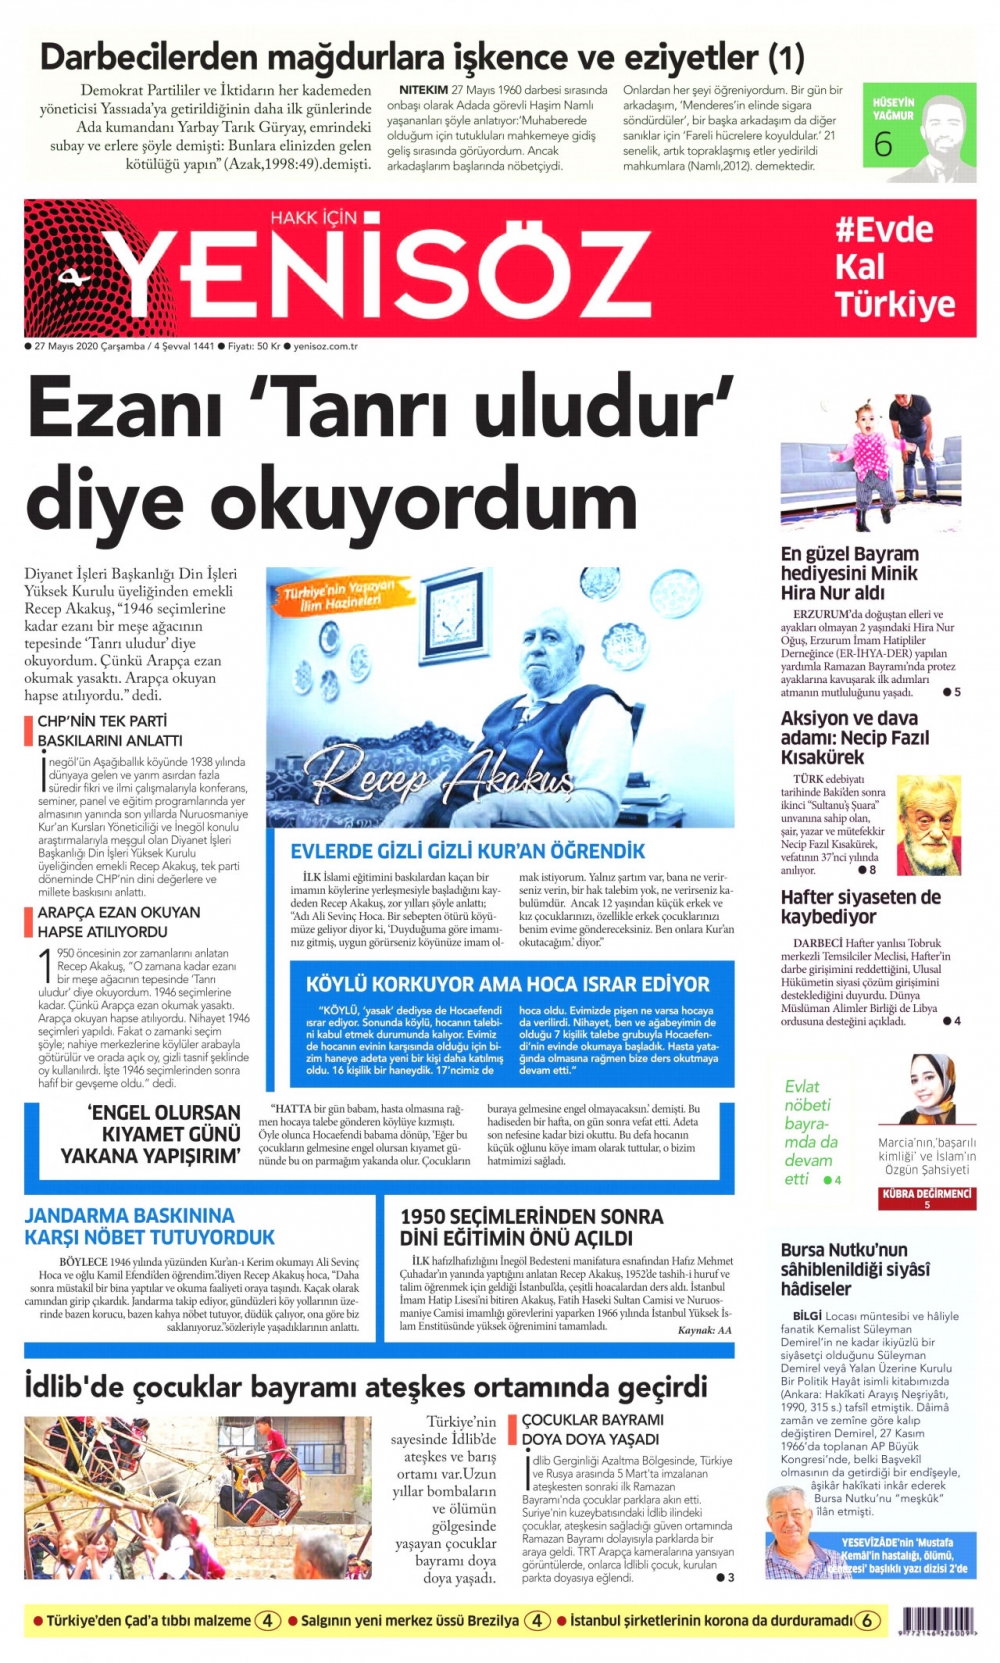 Gazeteler bugün ne yazdı? 27 Mayıs Gazete Manşetleri 21